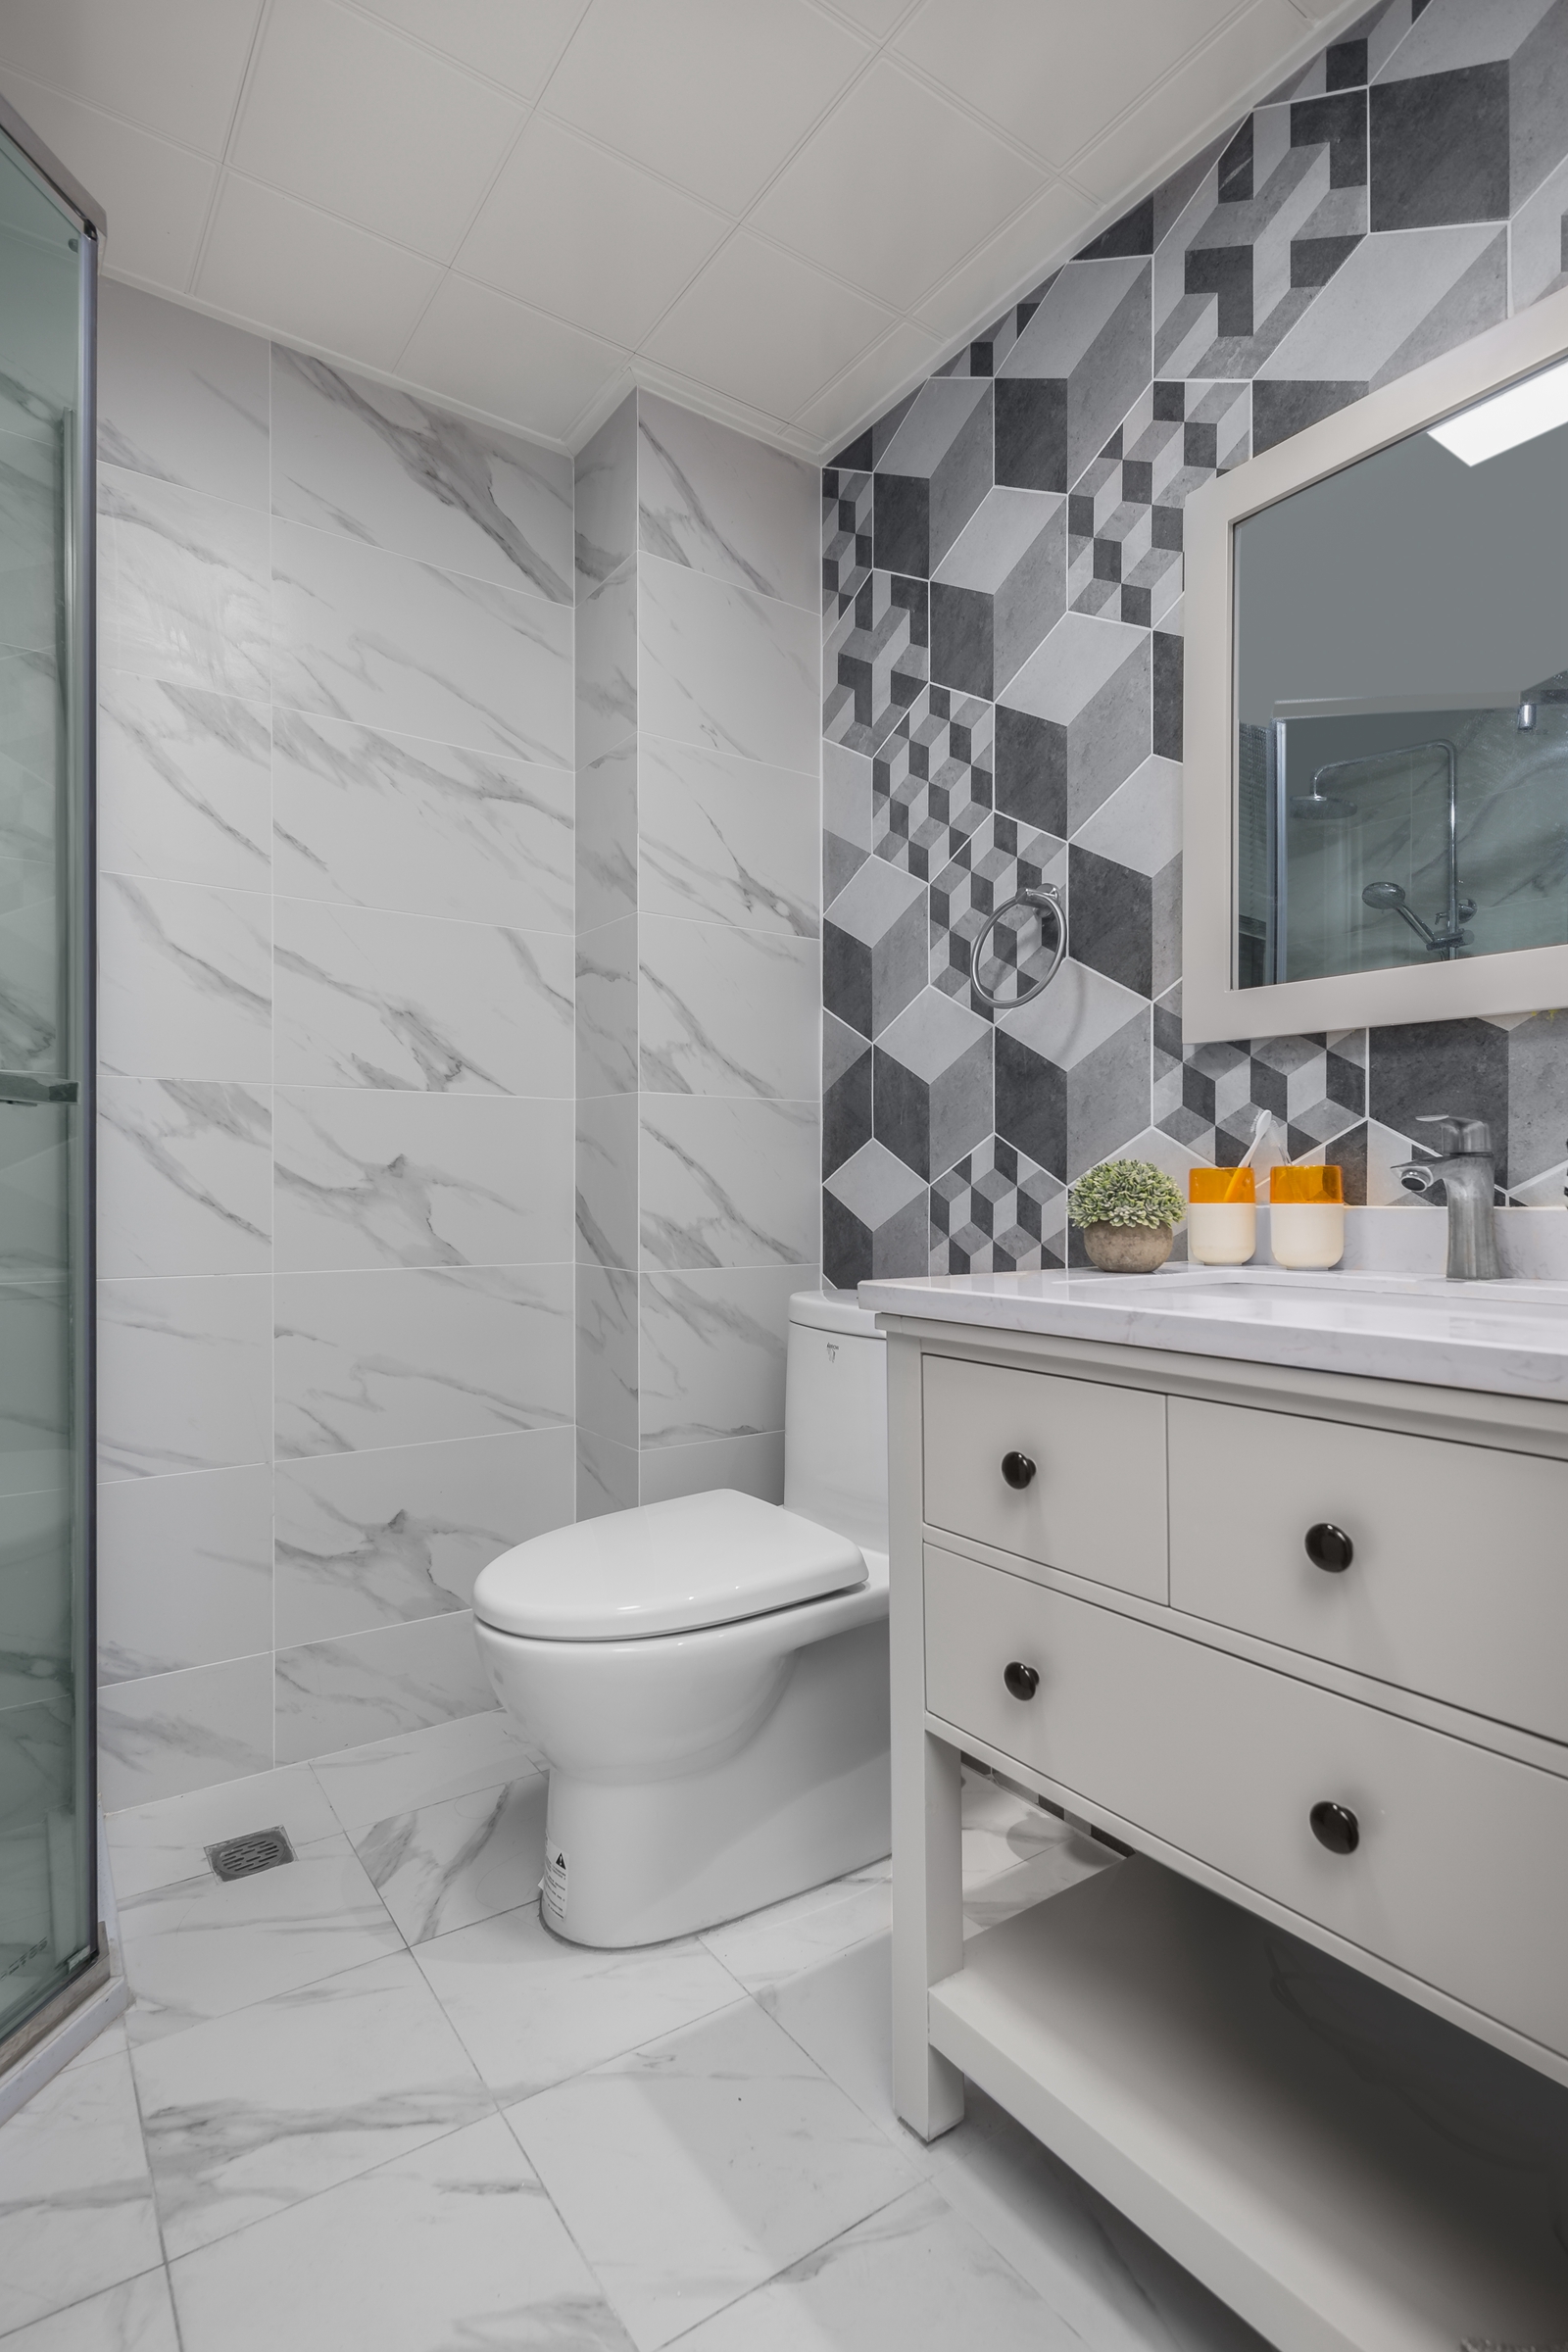 鹅卵石瓷砖效果图厕所图片